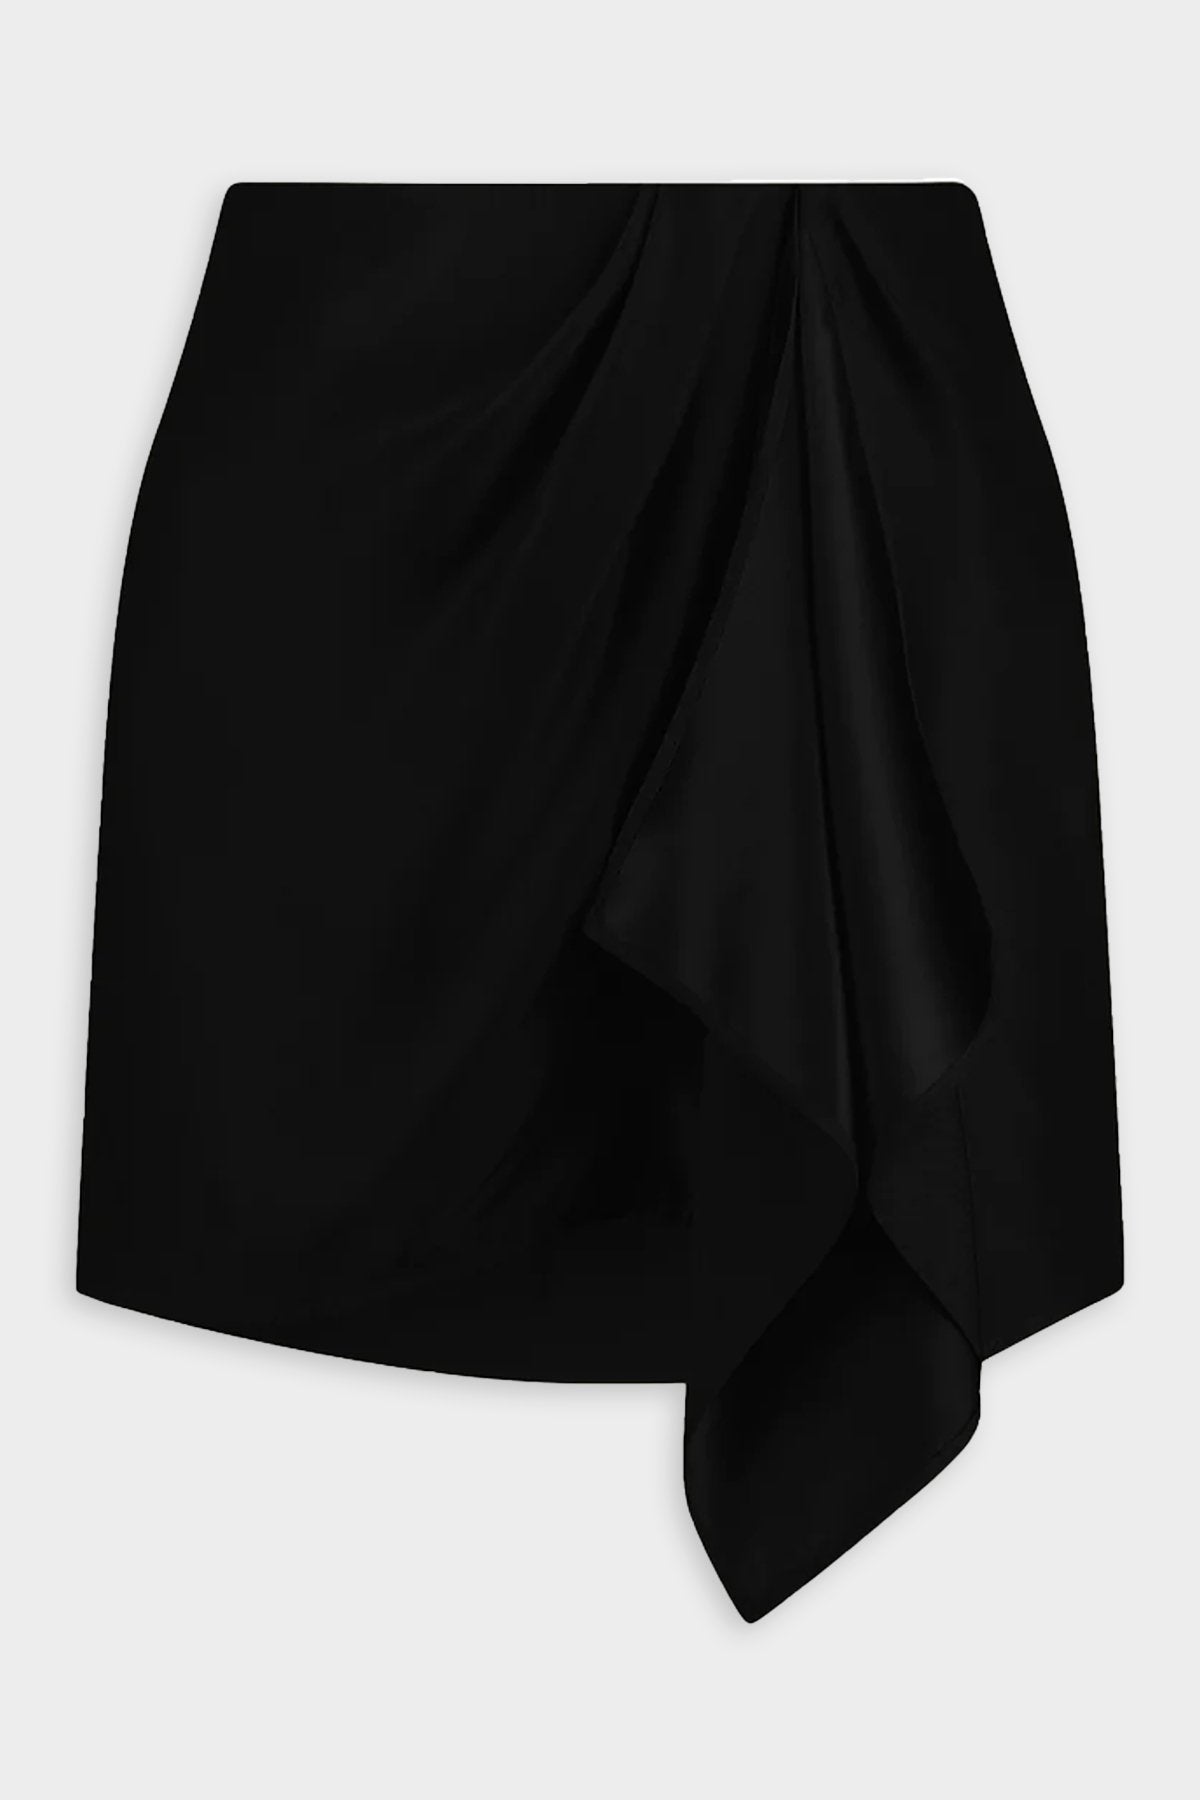 Anjo Skirt in Black - shop-olivia.com